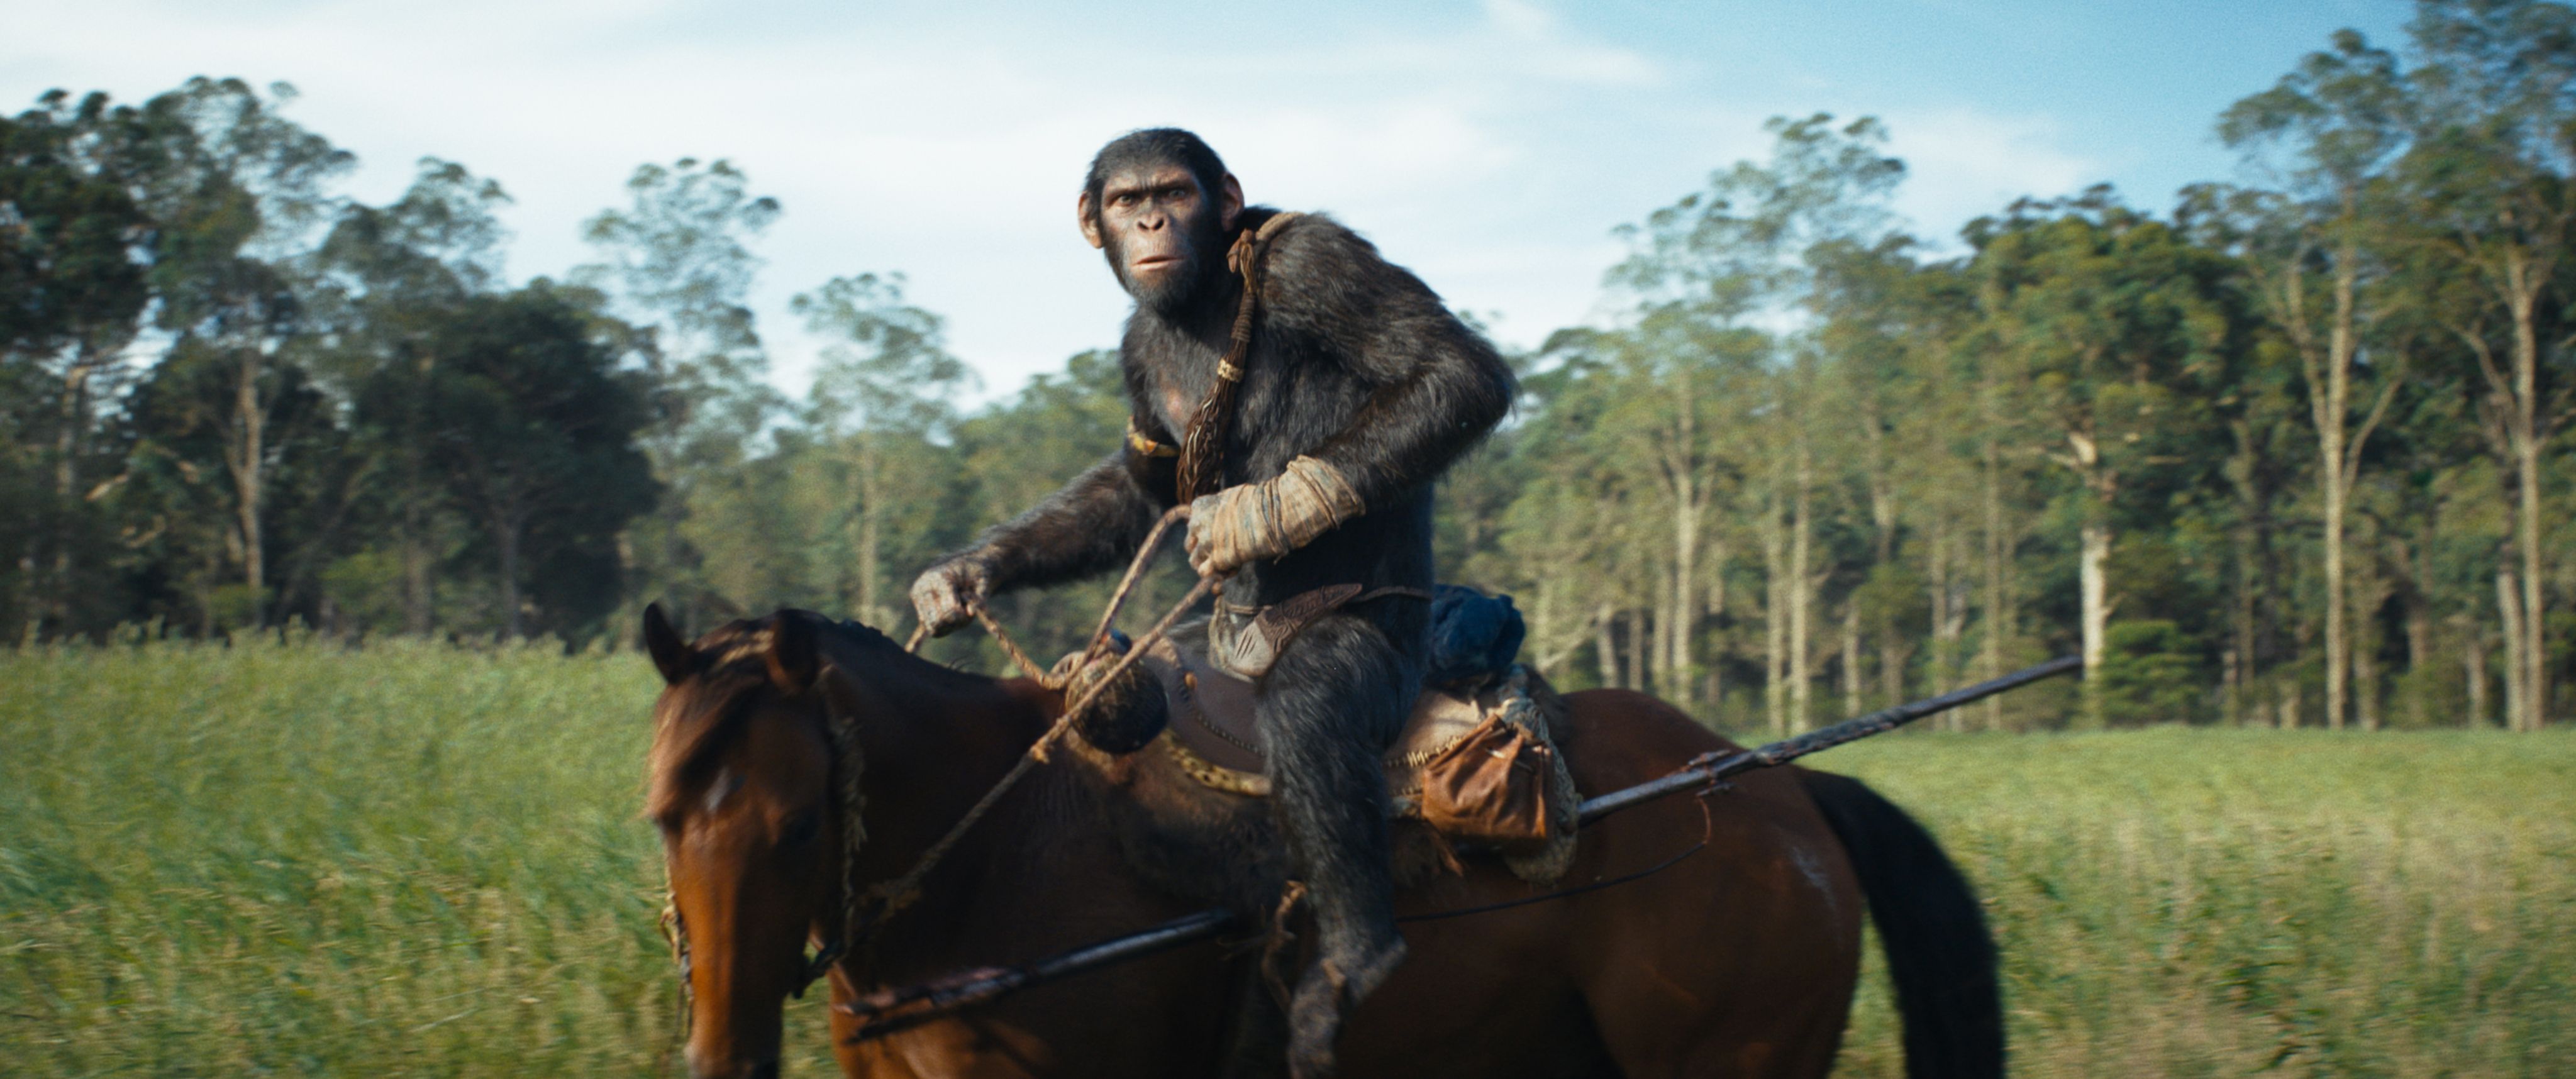 Первые реакции на «Королевство планеты обезьян» появились еще до выхода фильма в кино